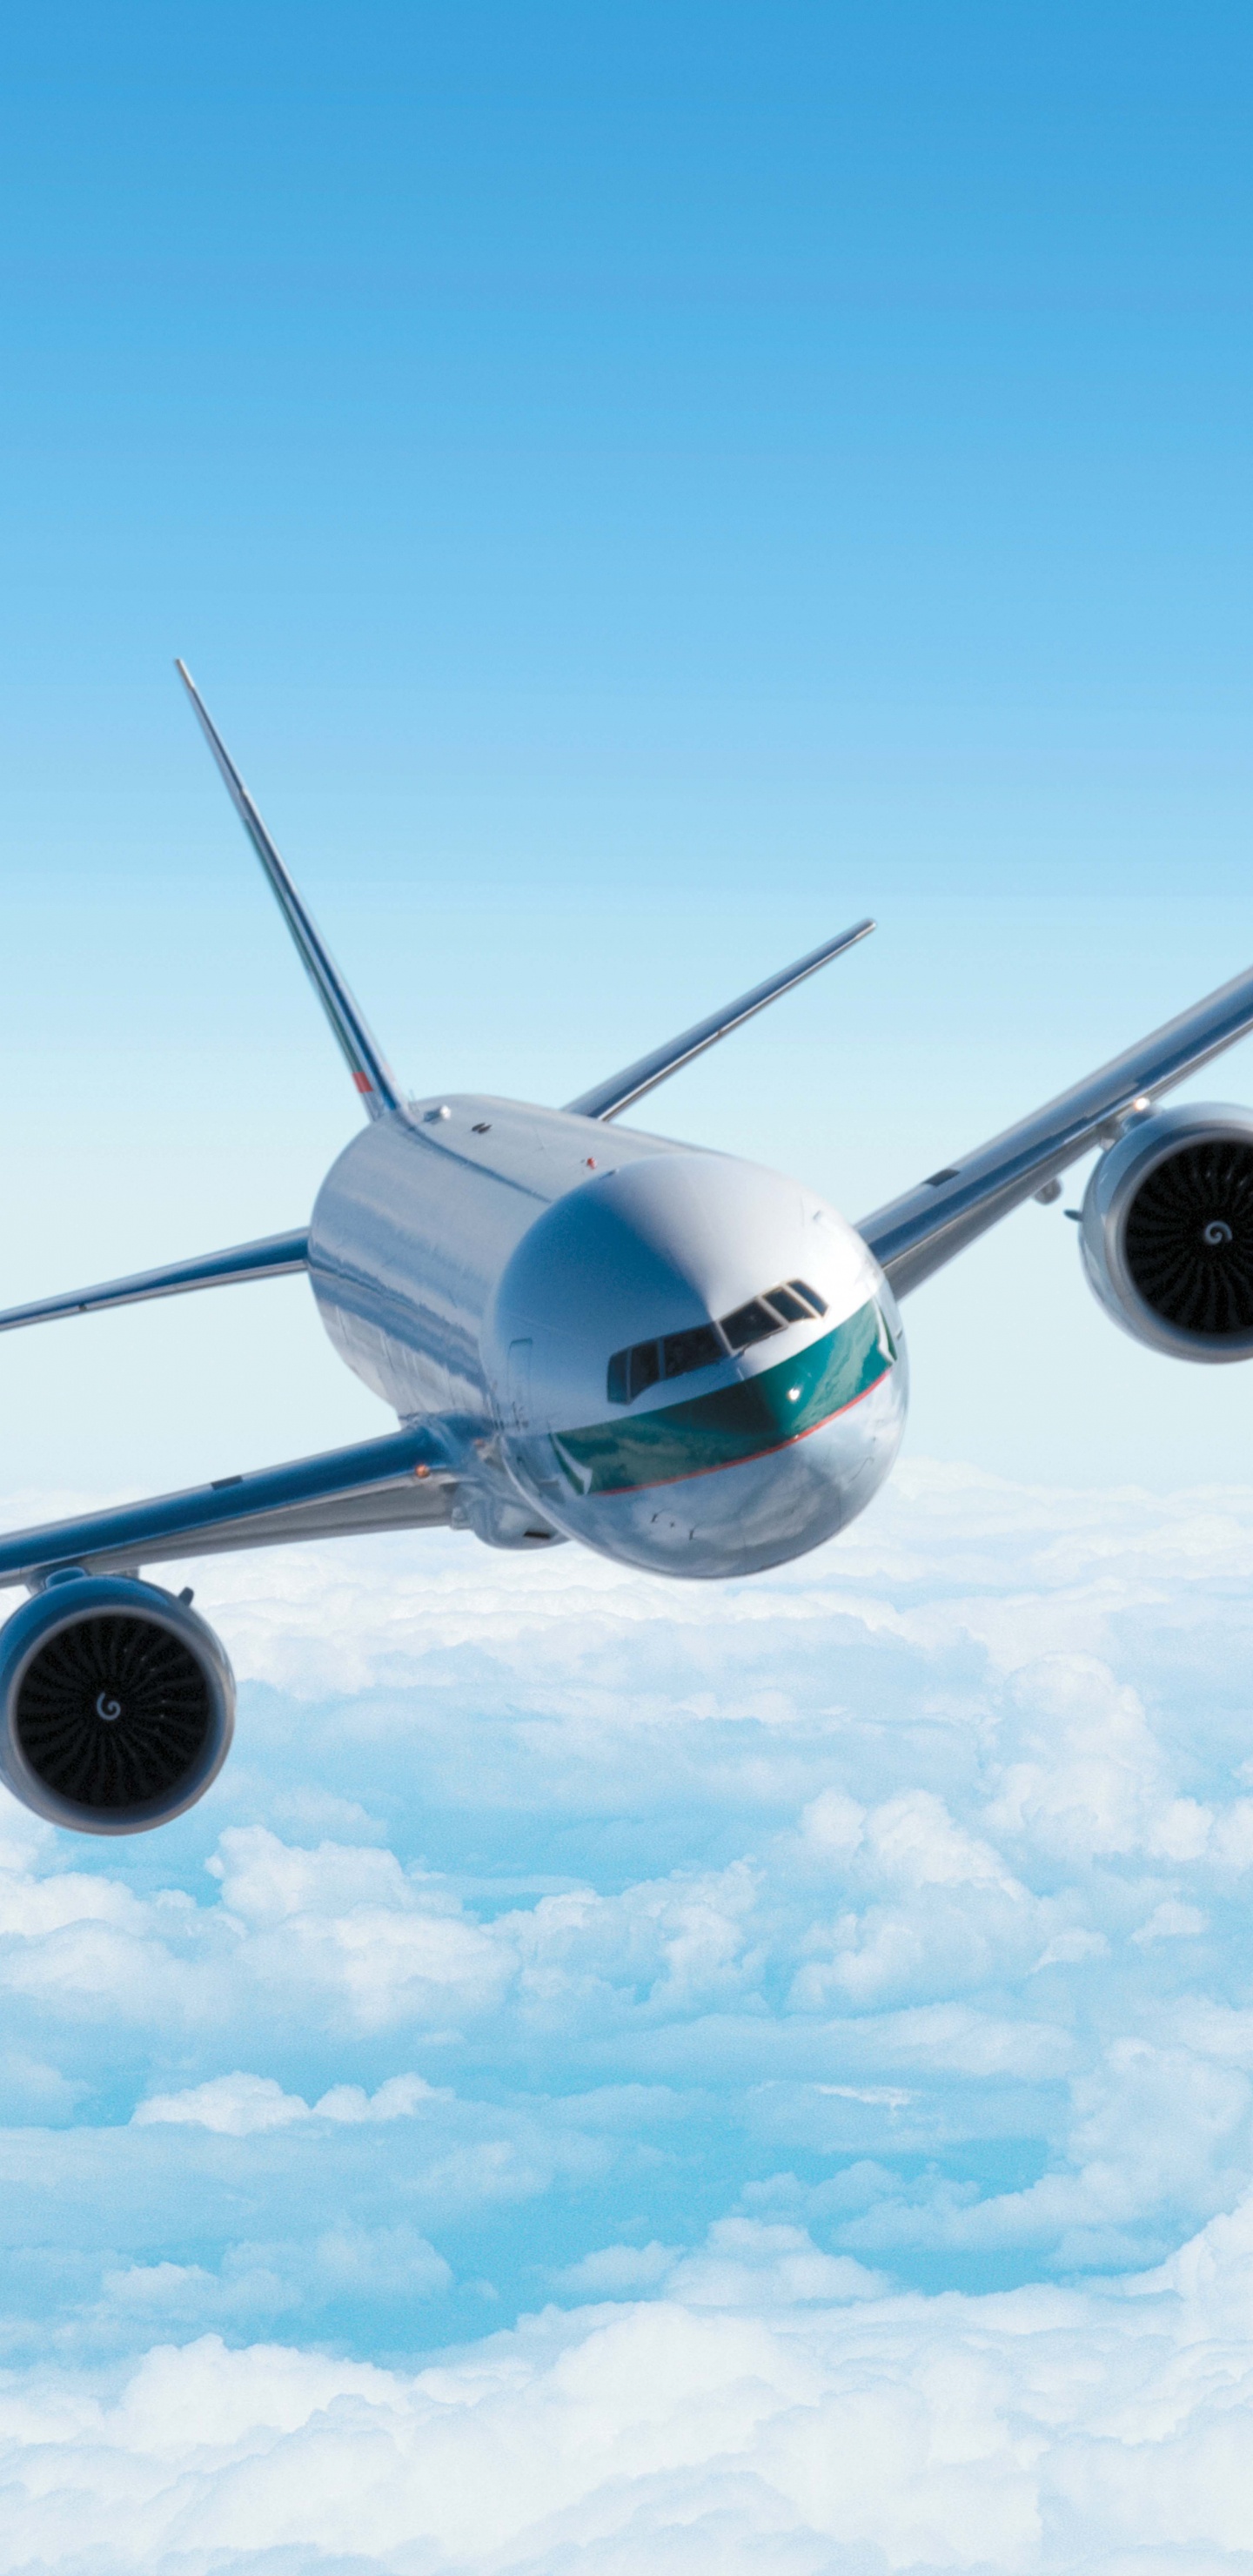 空中客车公司380, 空中客车公司, 航空, 航空公司, 波音 壁纸 1440x2960 允许